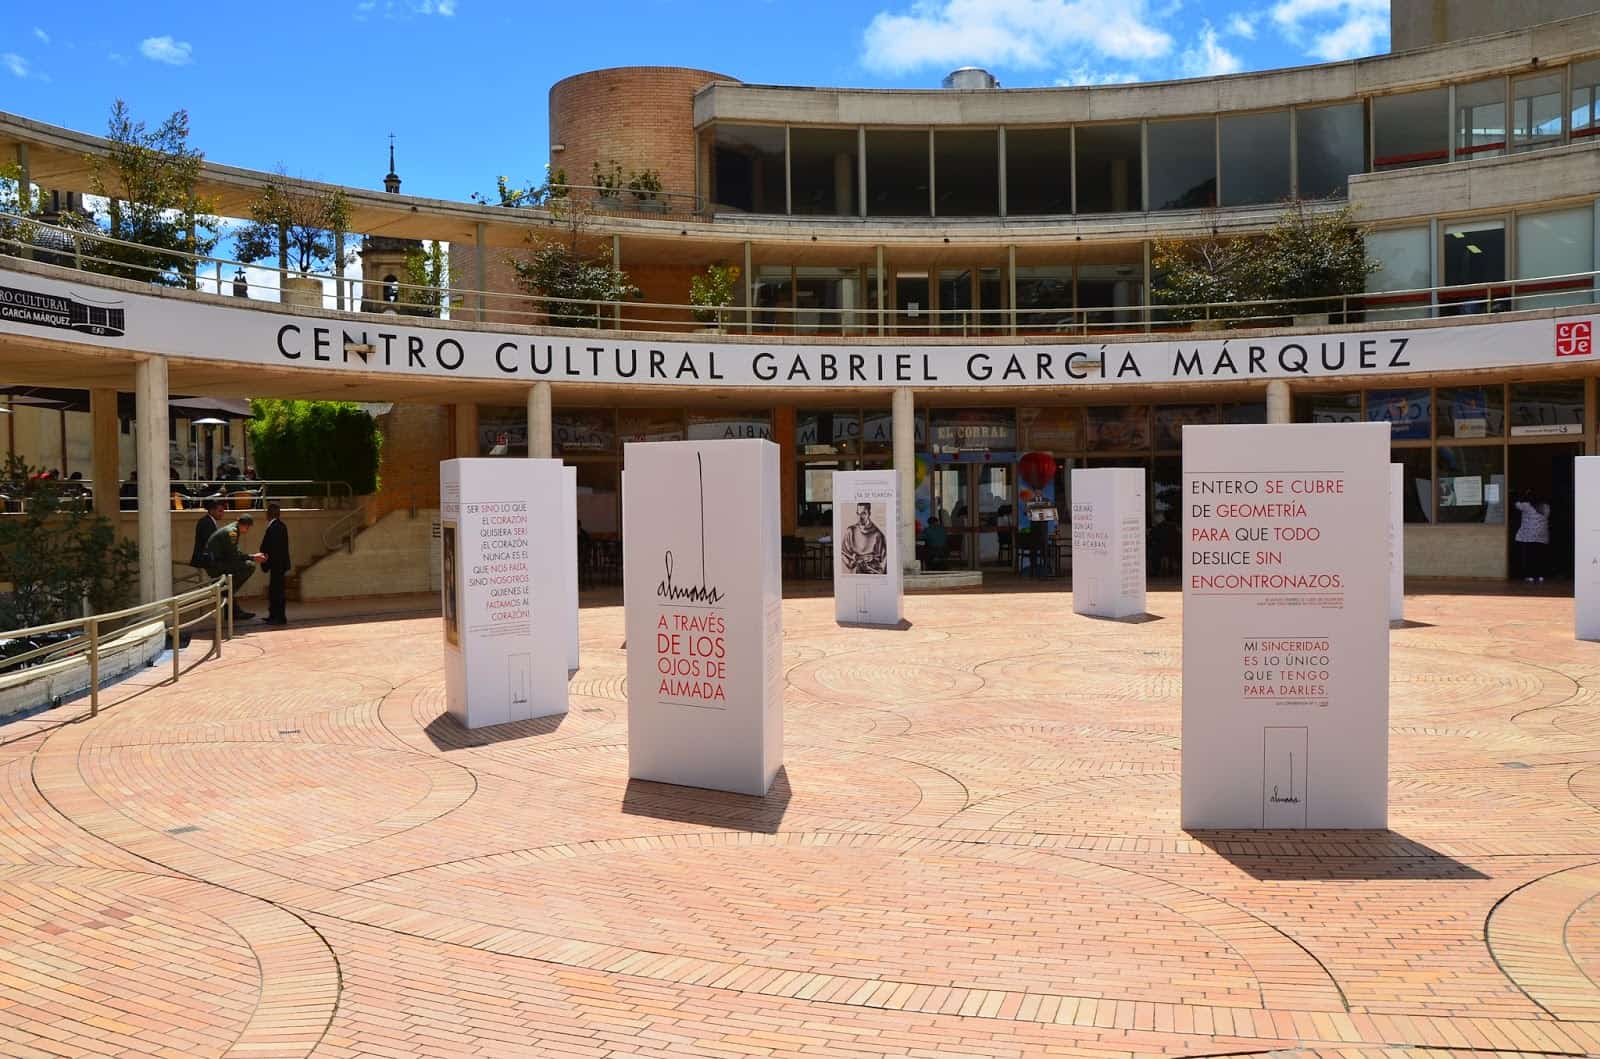 Gabriel García Márquez Cultural Center in La Candelaria, Bogotá, Colombia